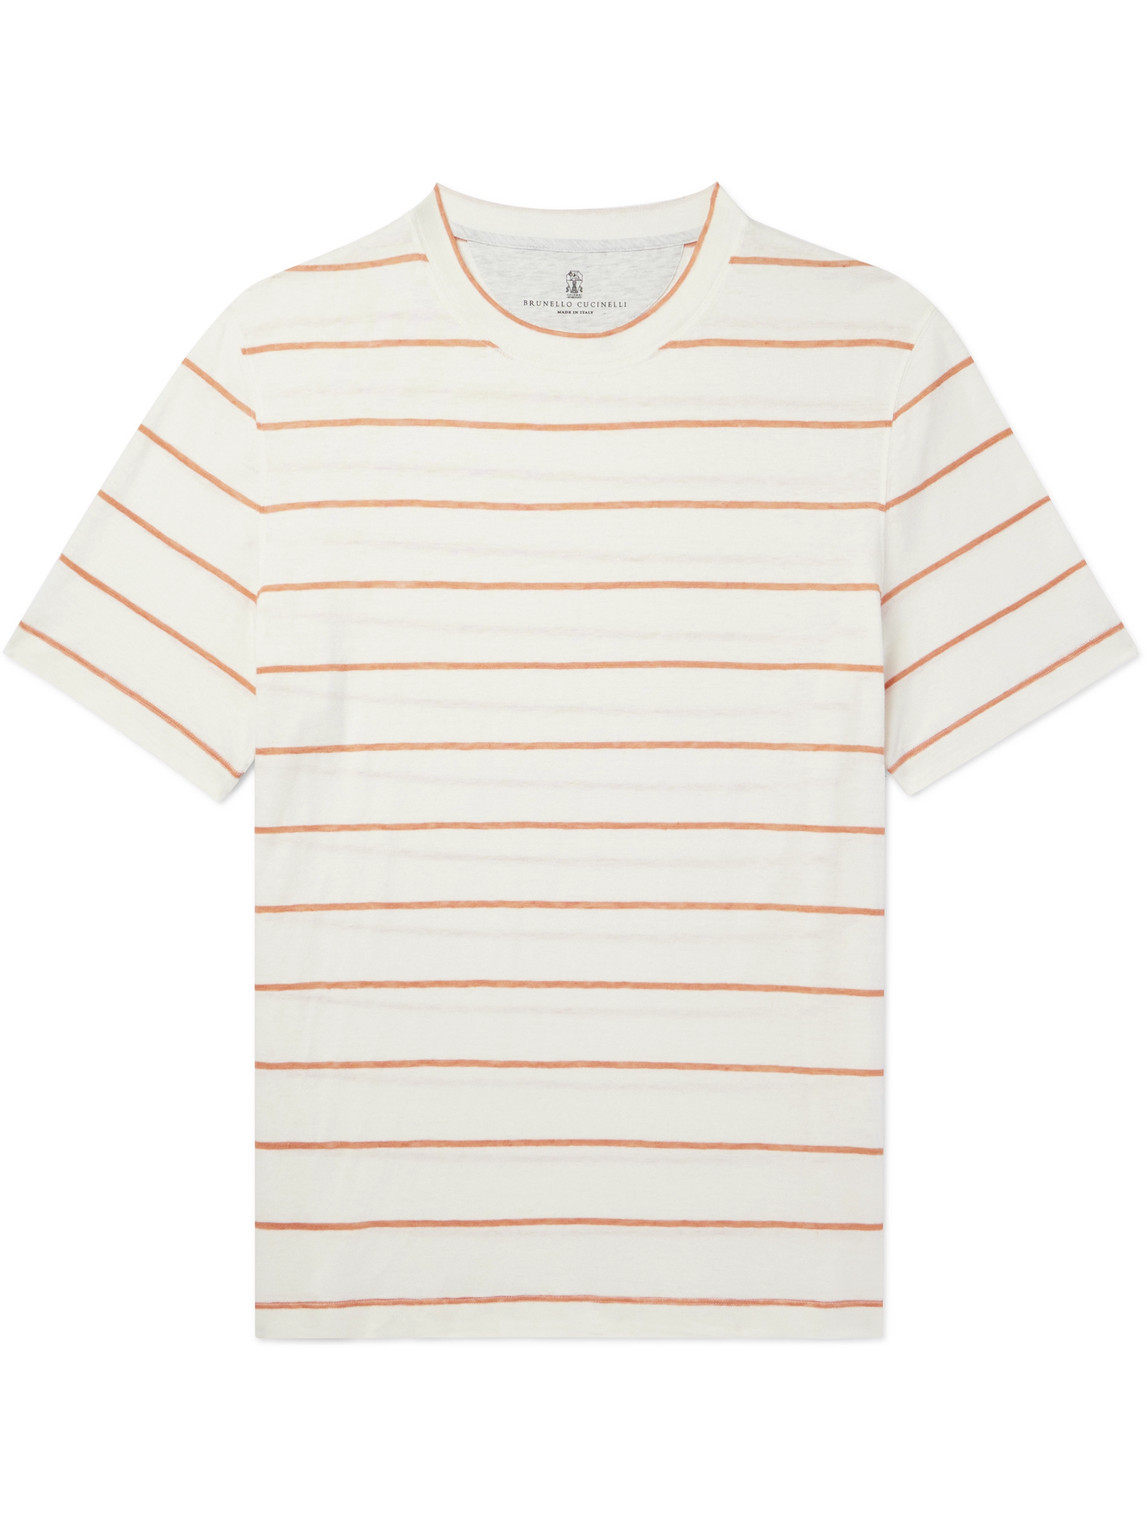 Brunello Cucinelli - Striped Linen and Cotton-Blend T-Shirt - Men - Neutrals - S von Brunello Cucinelli